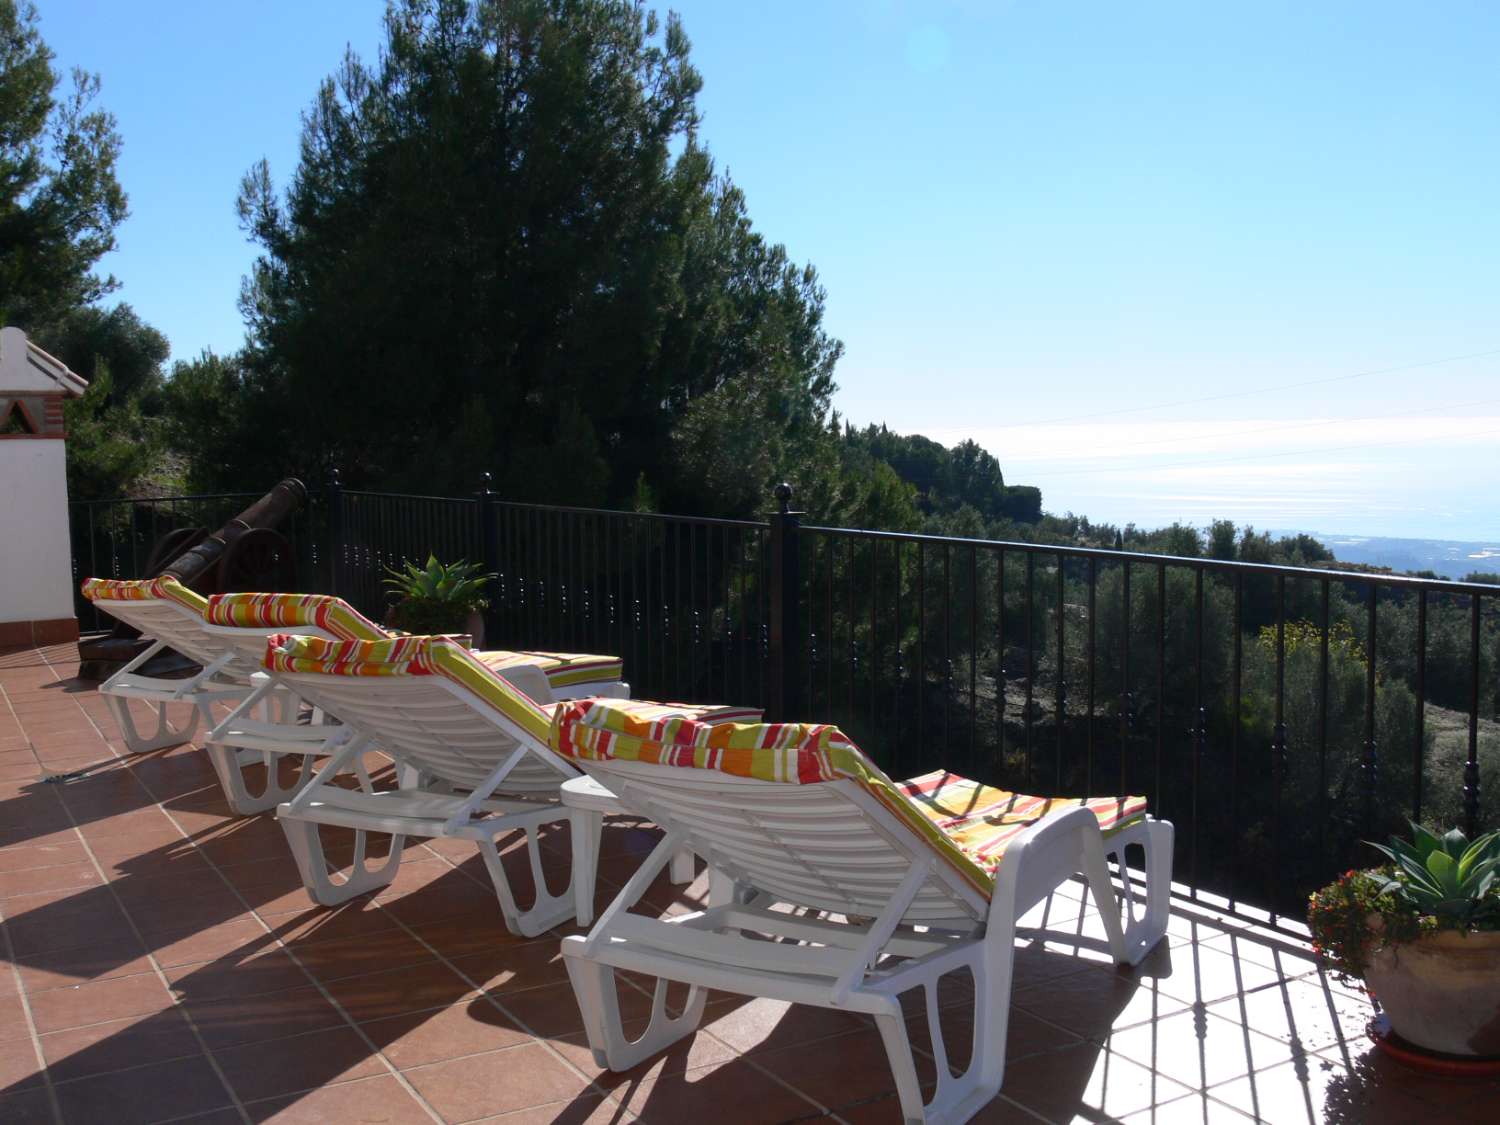 Schönes ruhiges Haus in Frigiliana mit schönem Garten und privatem Pool